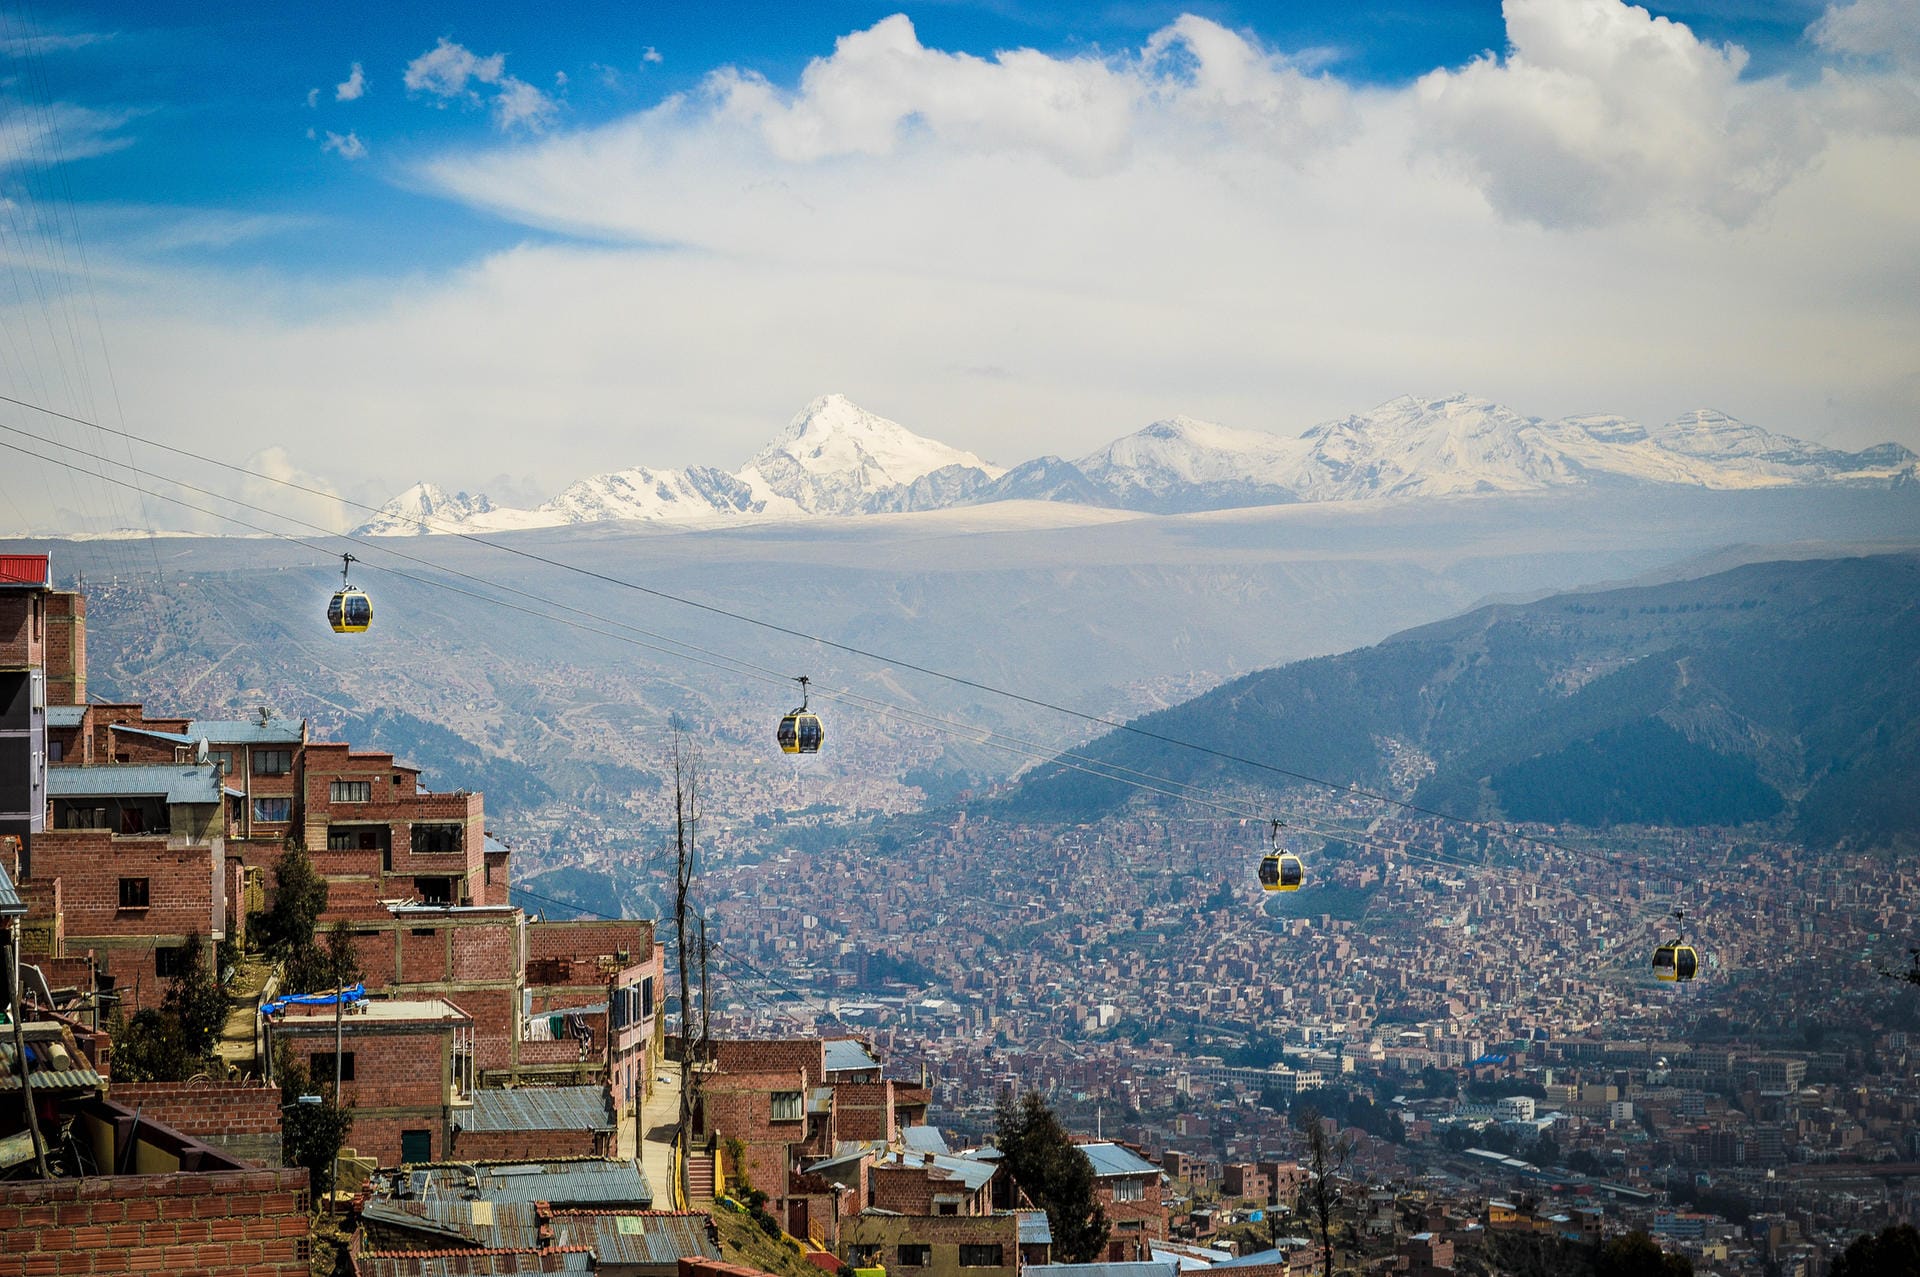 Platz 6: Panoramablick über La Paz in Bolivien: Diese Stadt befindet sich 3.500 Meter über dem Meeresspiegel und ist damit die am höchsten gelegene Verwaltungshauptstadt weltweit. Die spektakuläre Aussicht auf die Umgebung kann mit einer Fahrt in der Mi Teleférico bestaunt werden.